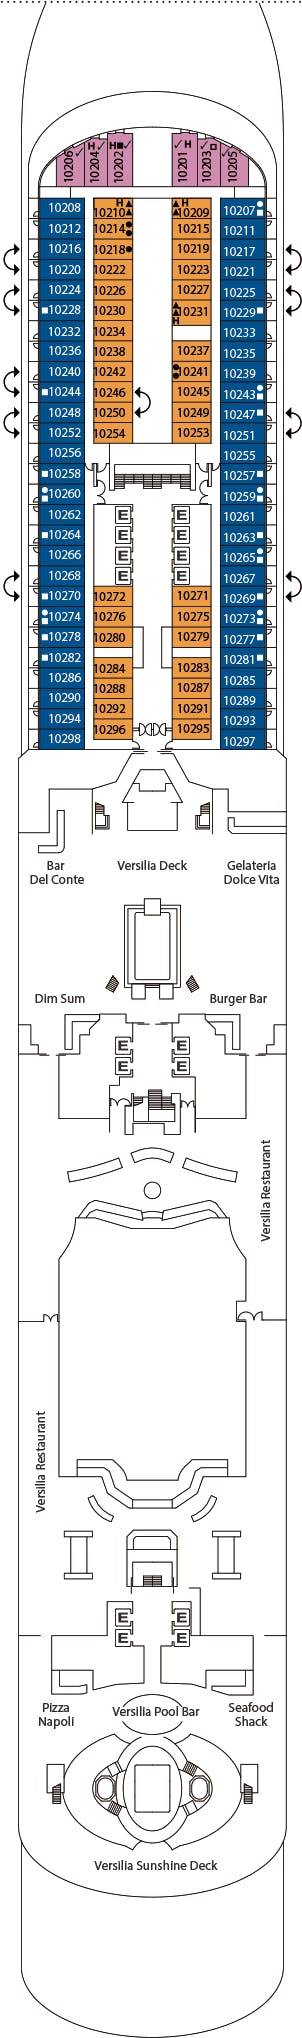 Costa Firenze - Costa Kreuzfahrten - Deck 10 (Deck 10)